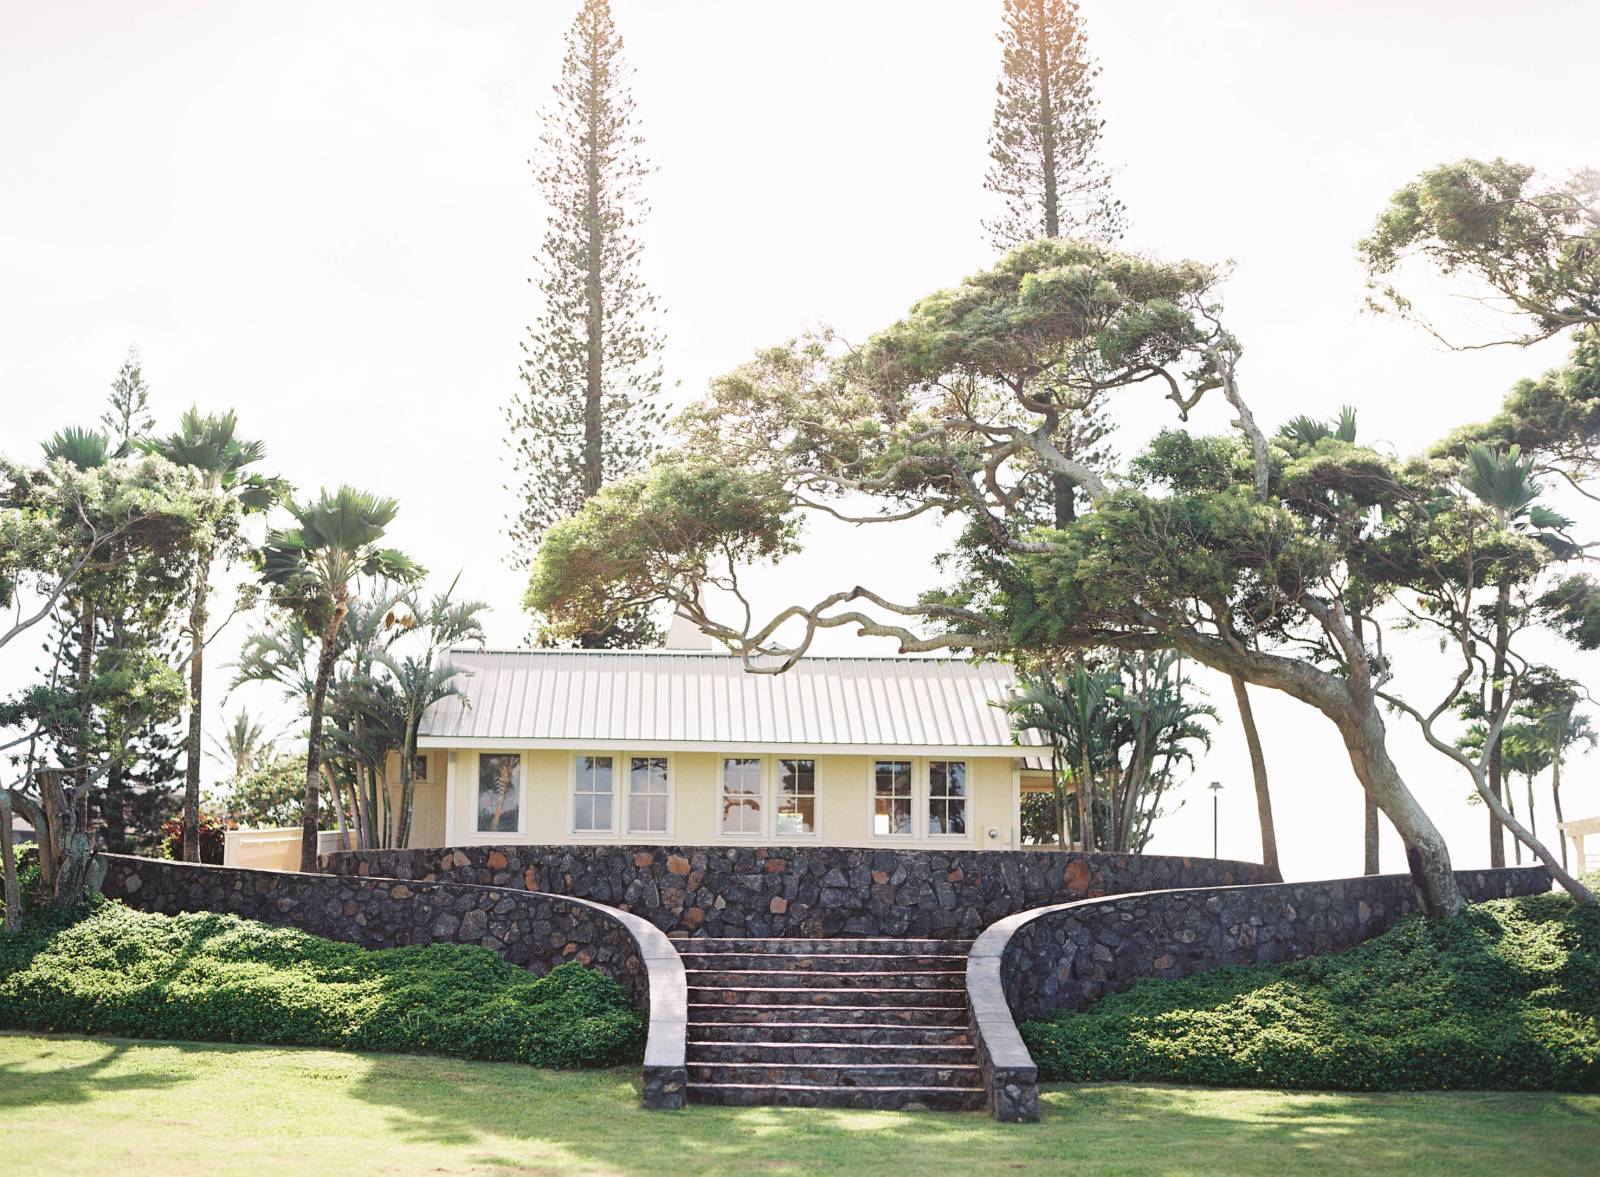 Maui, Hawaii Kapalua Steeple House Wedding Venue